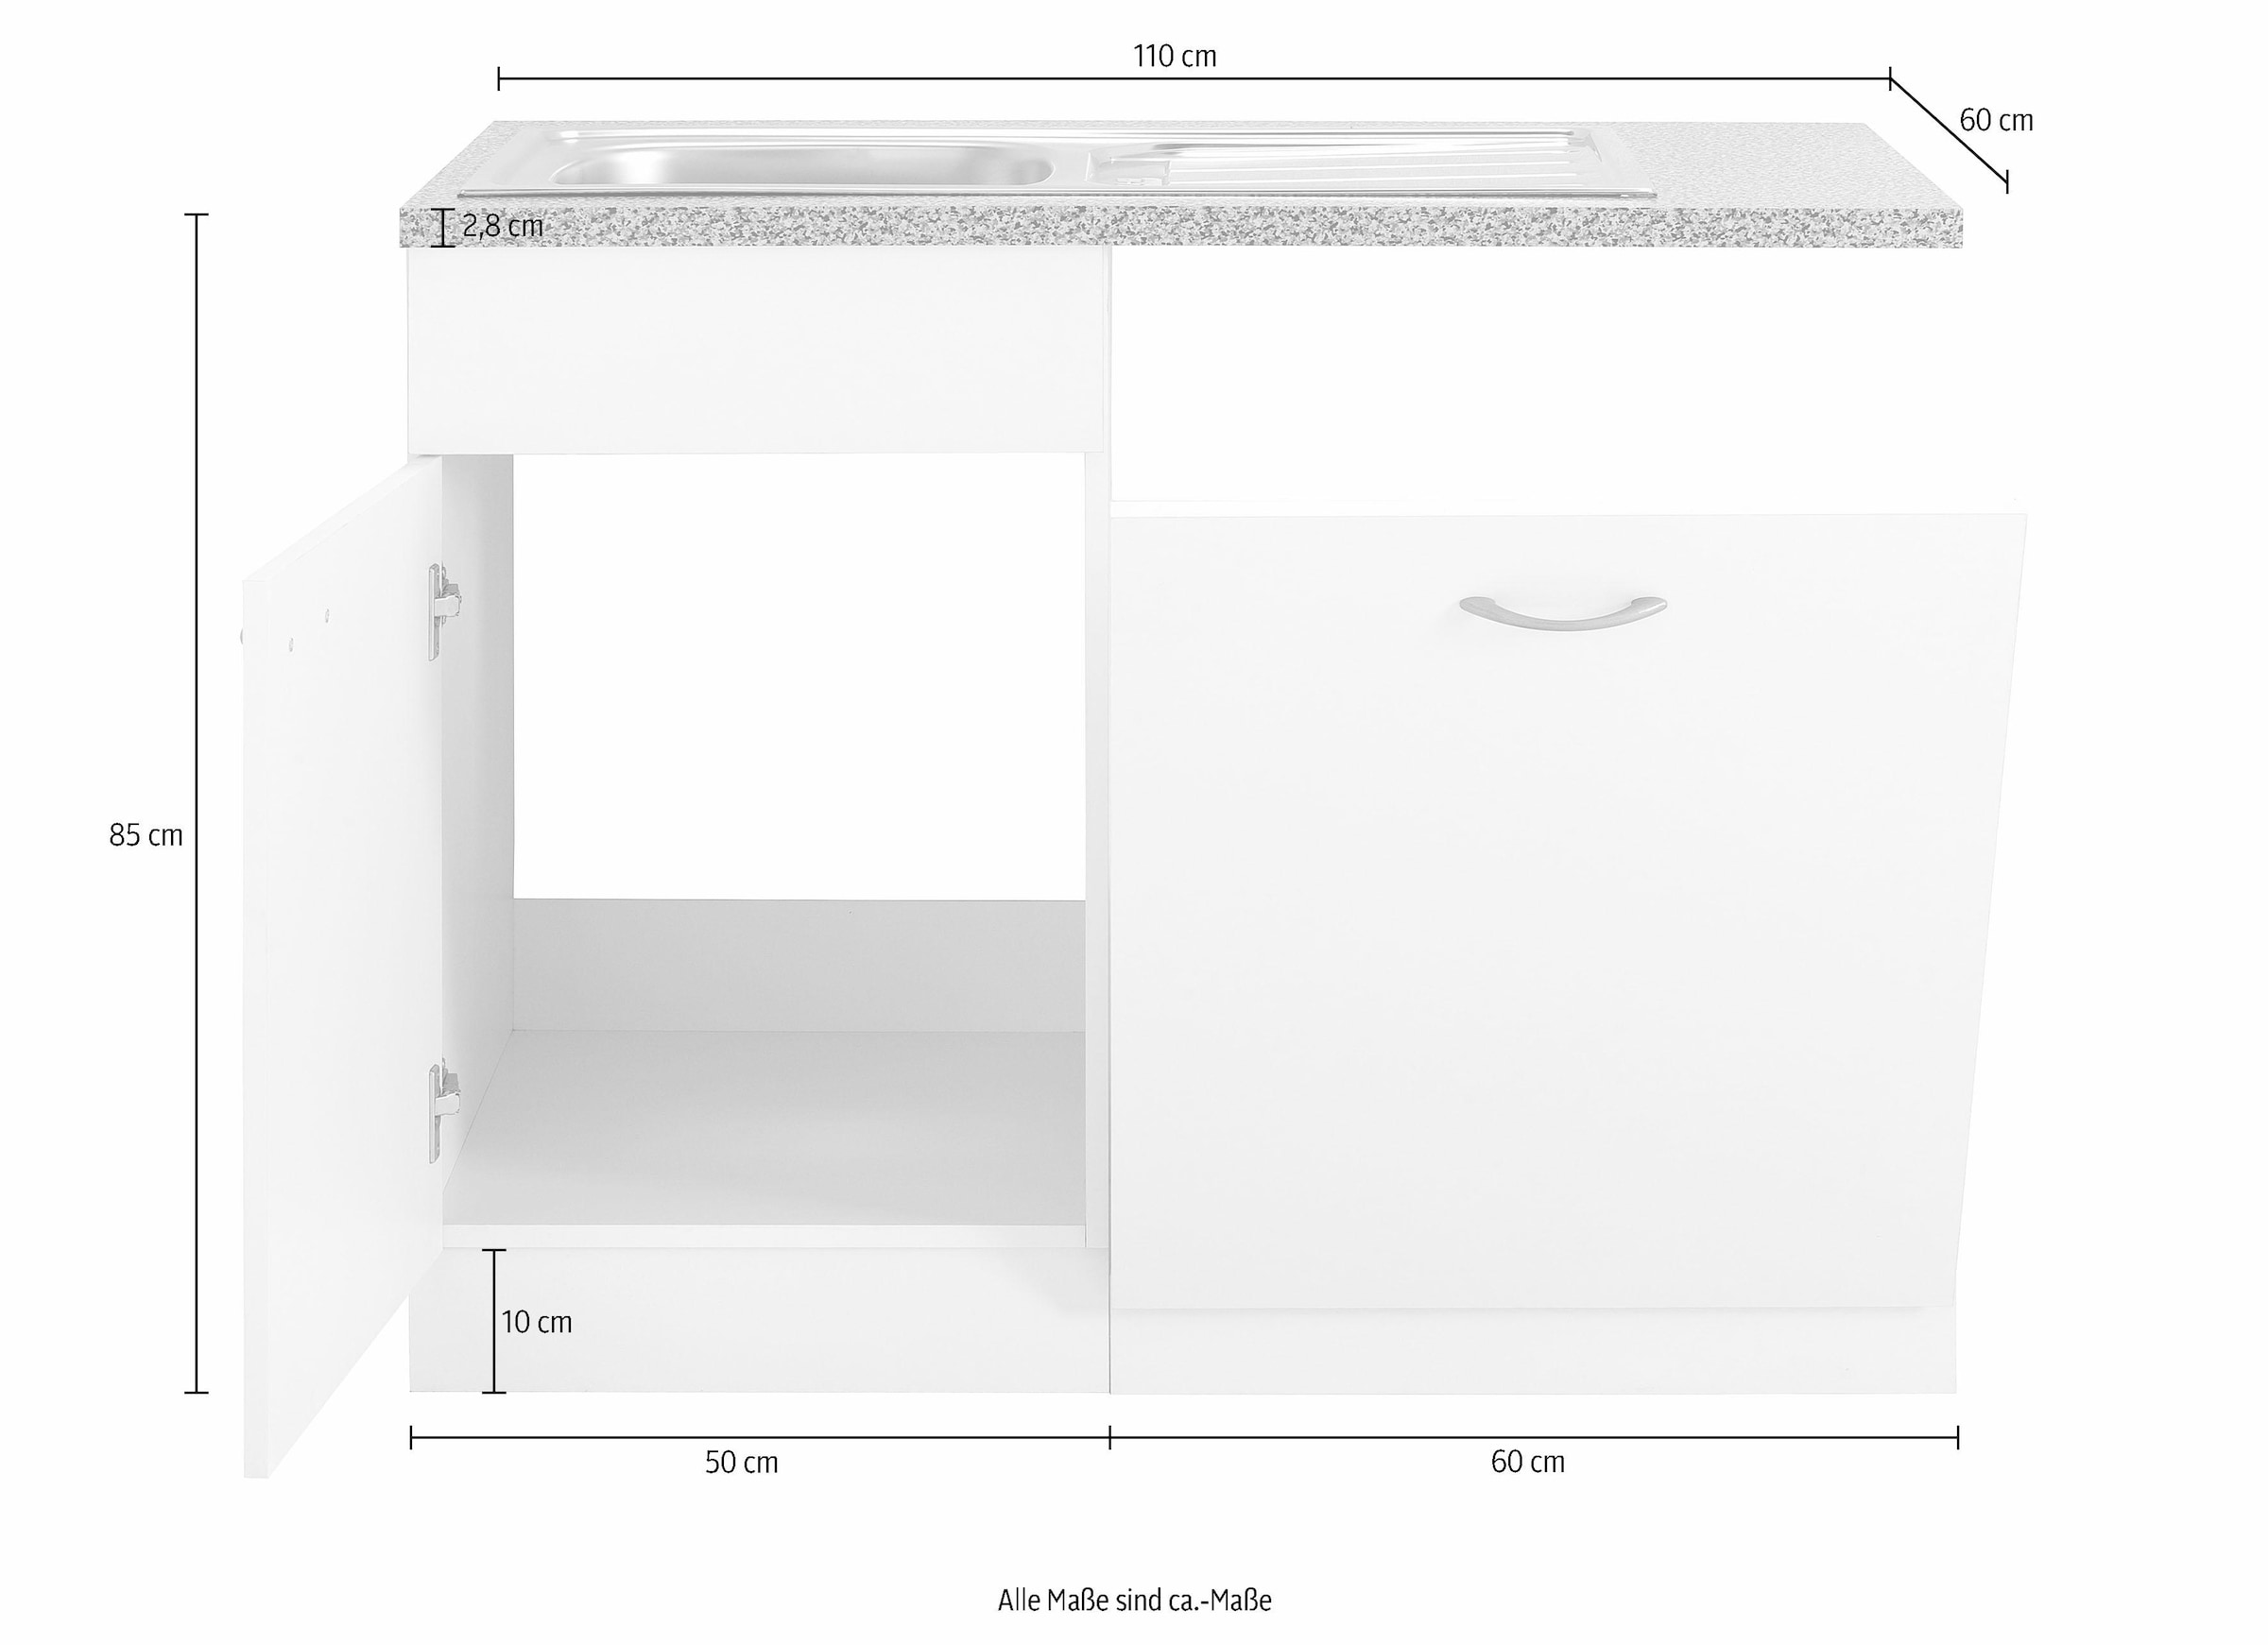 wiho Küchen Spülenschrank »Kiel«, 110 cm breit, inkl. Tür/Griff/Sockel für  Geschirrspüler bei